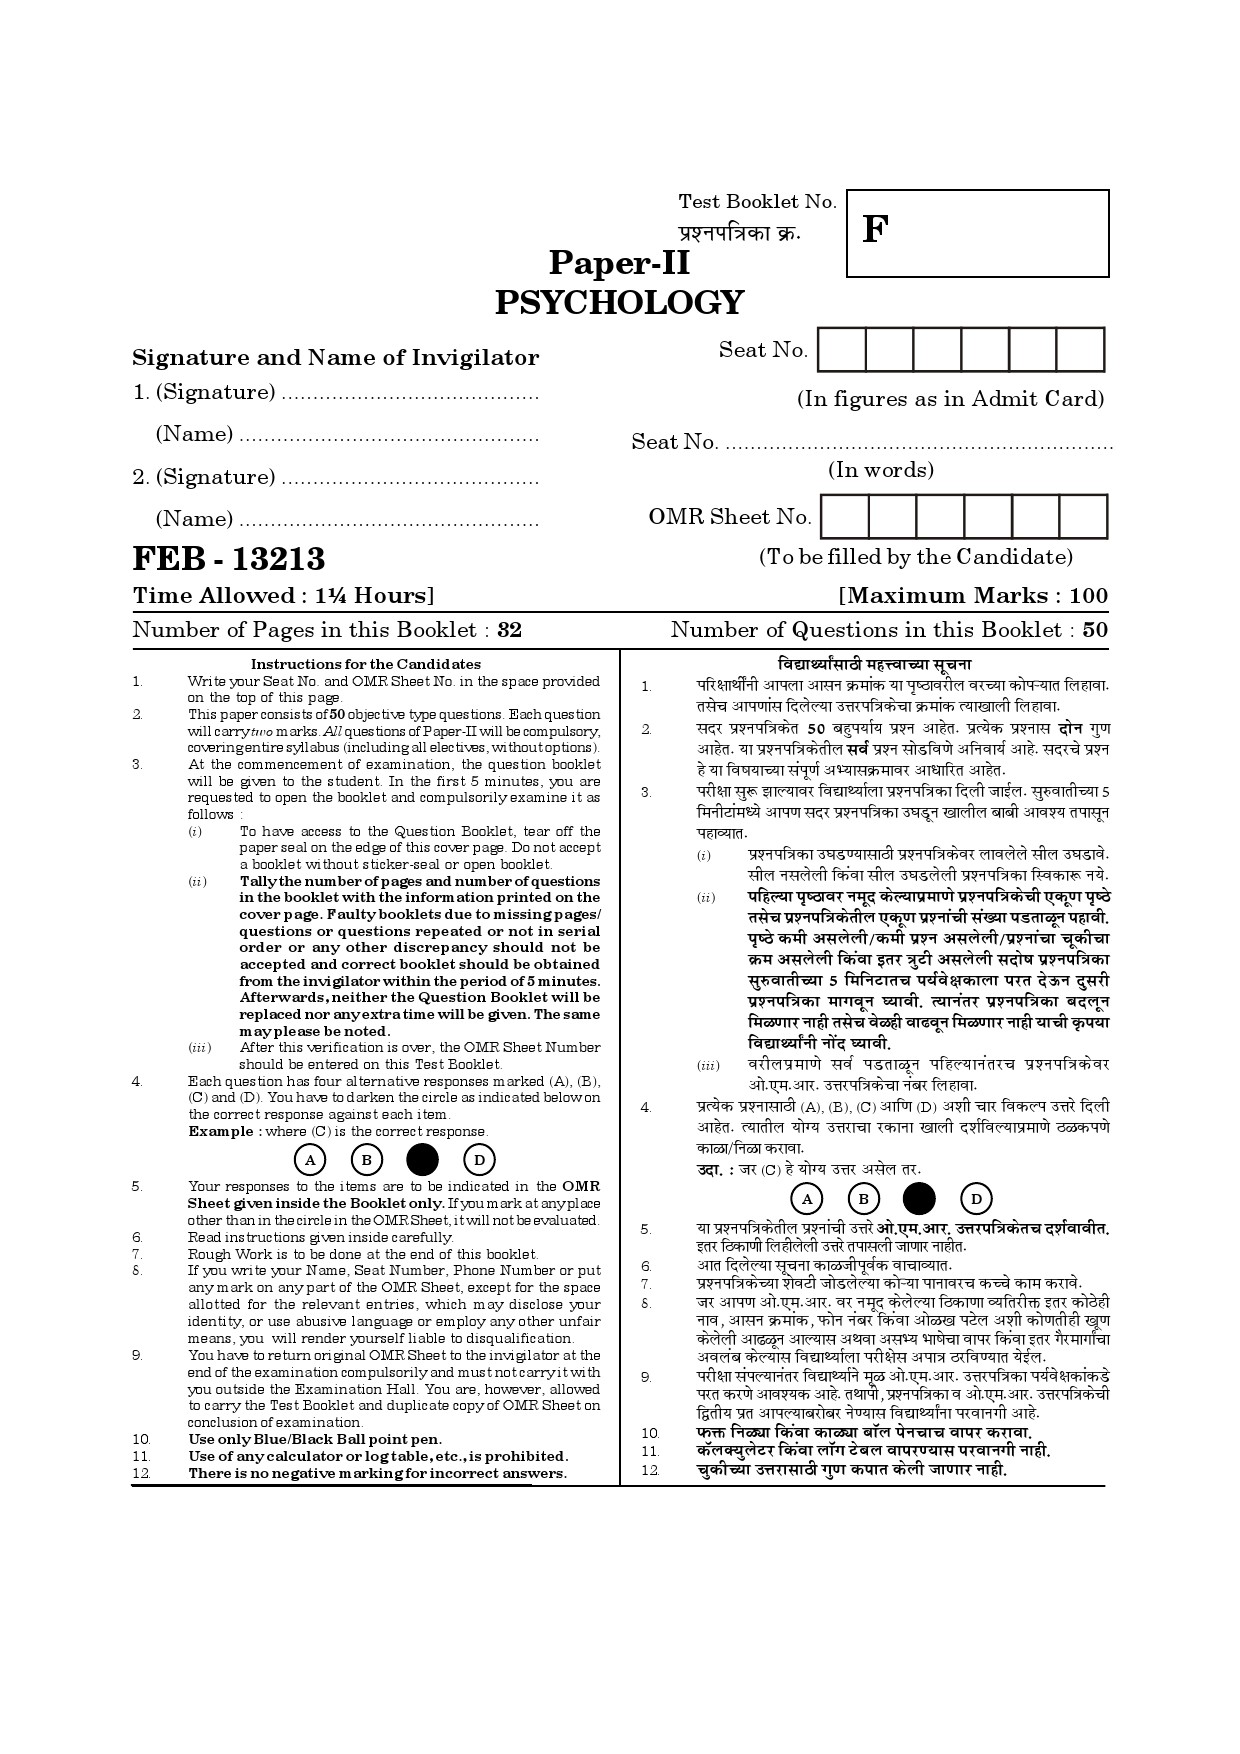 Maharashtra SET Psychology Question Paper II February 2013 29